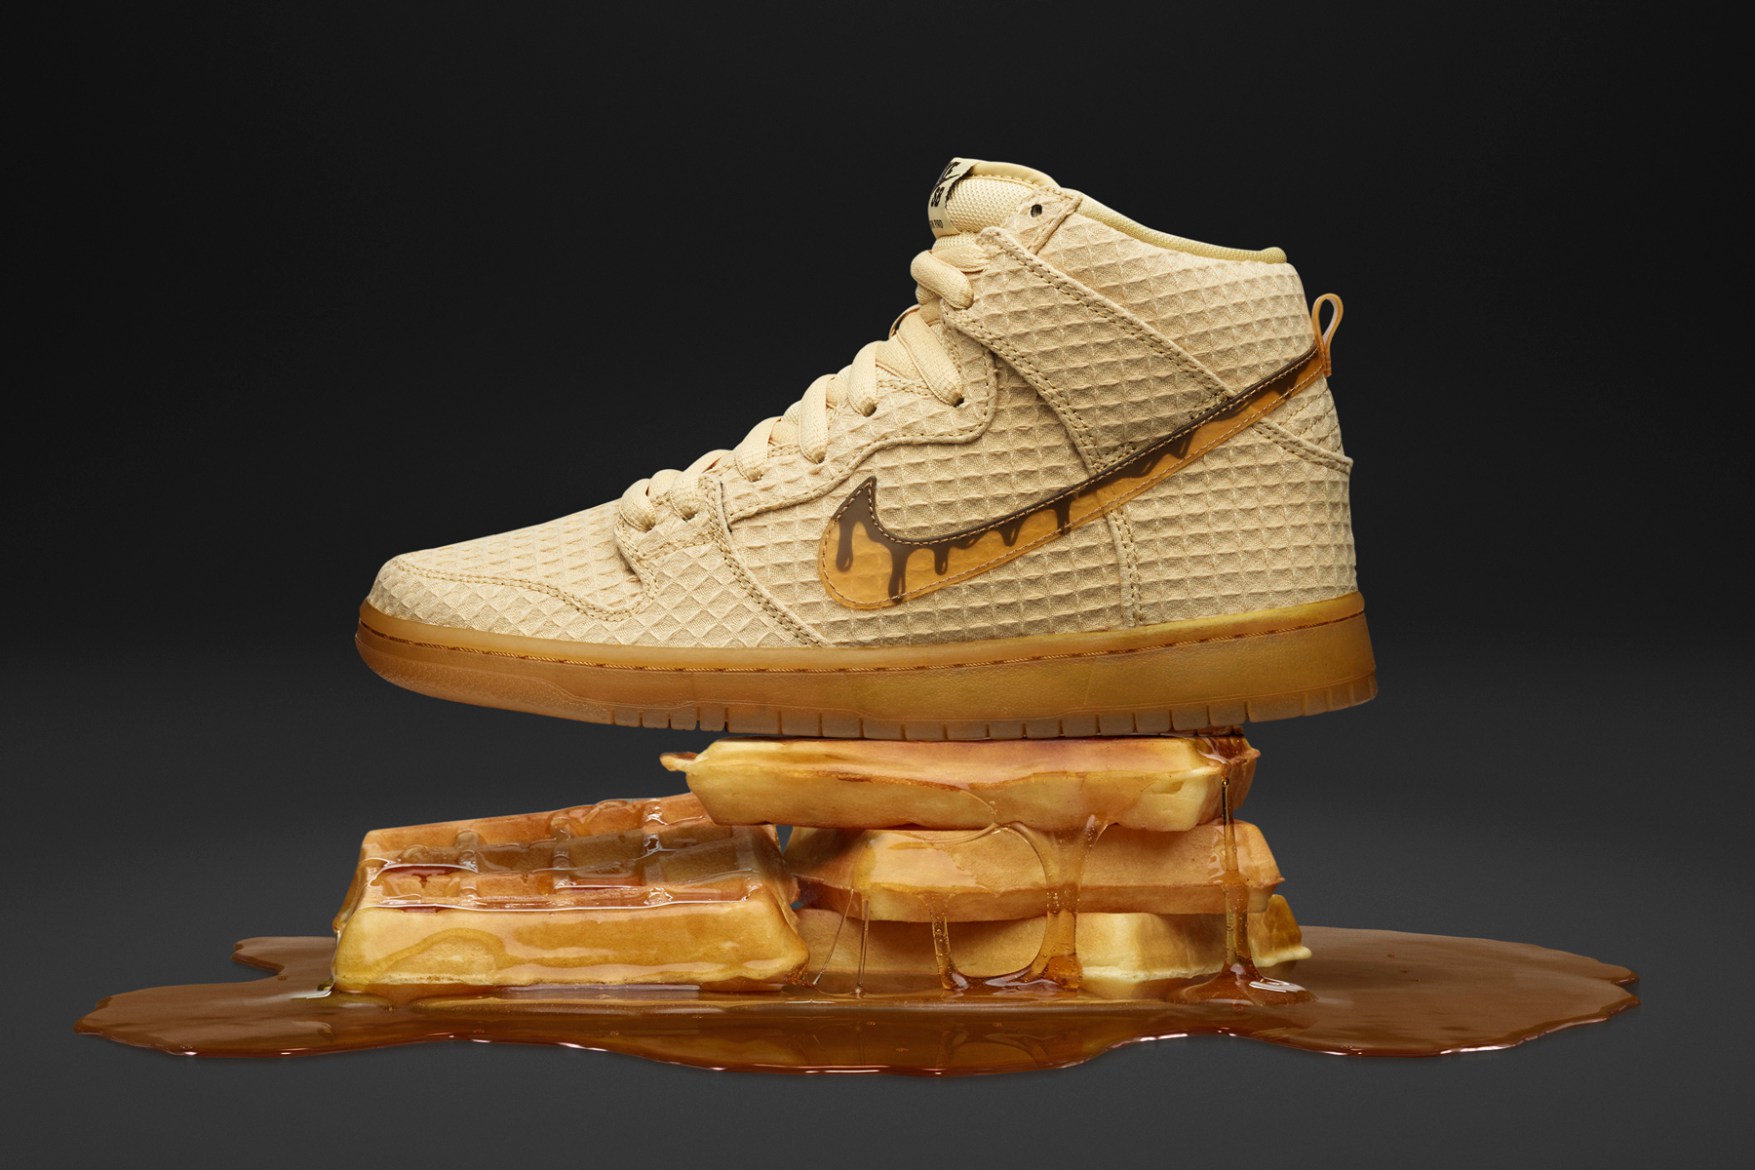 Bữa sáng ngon miệng cùng Nike SB Dunk High “Waffle” | #HNBMG